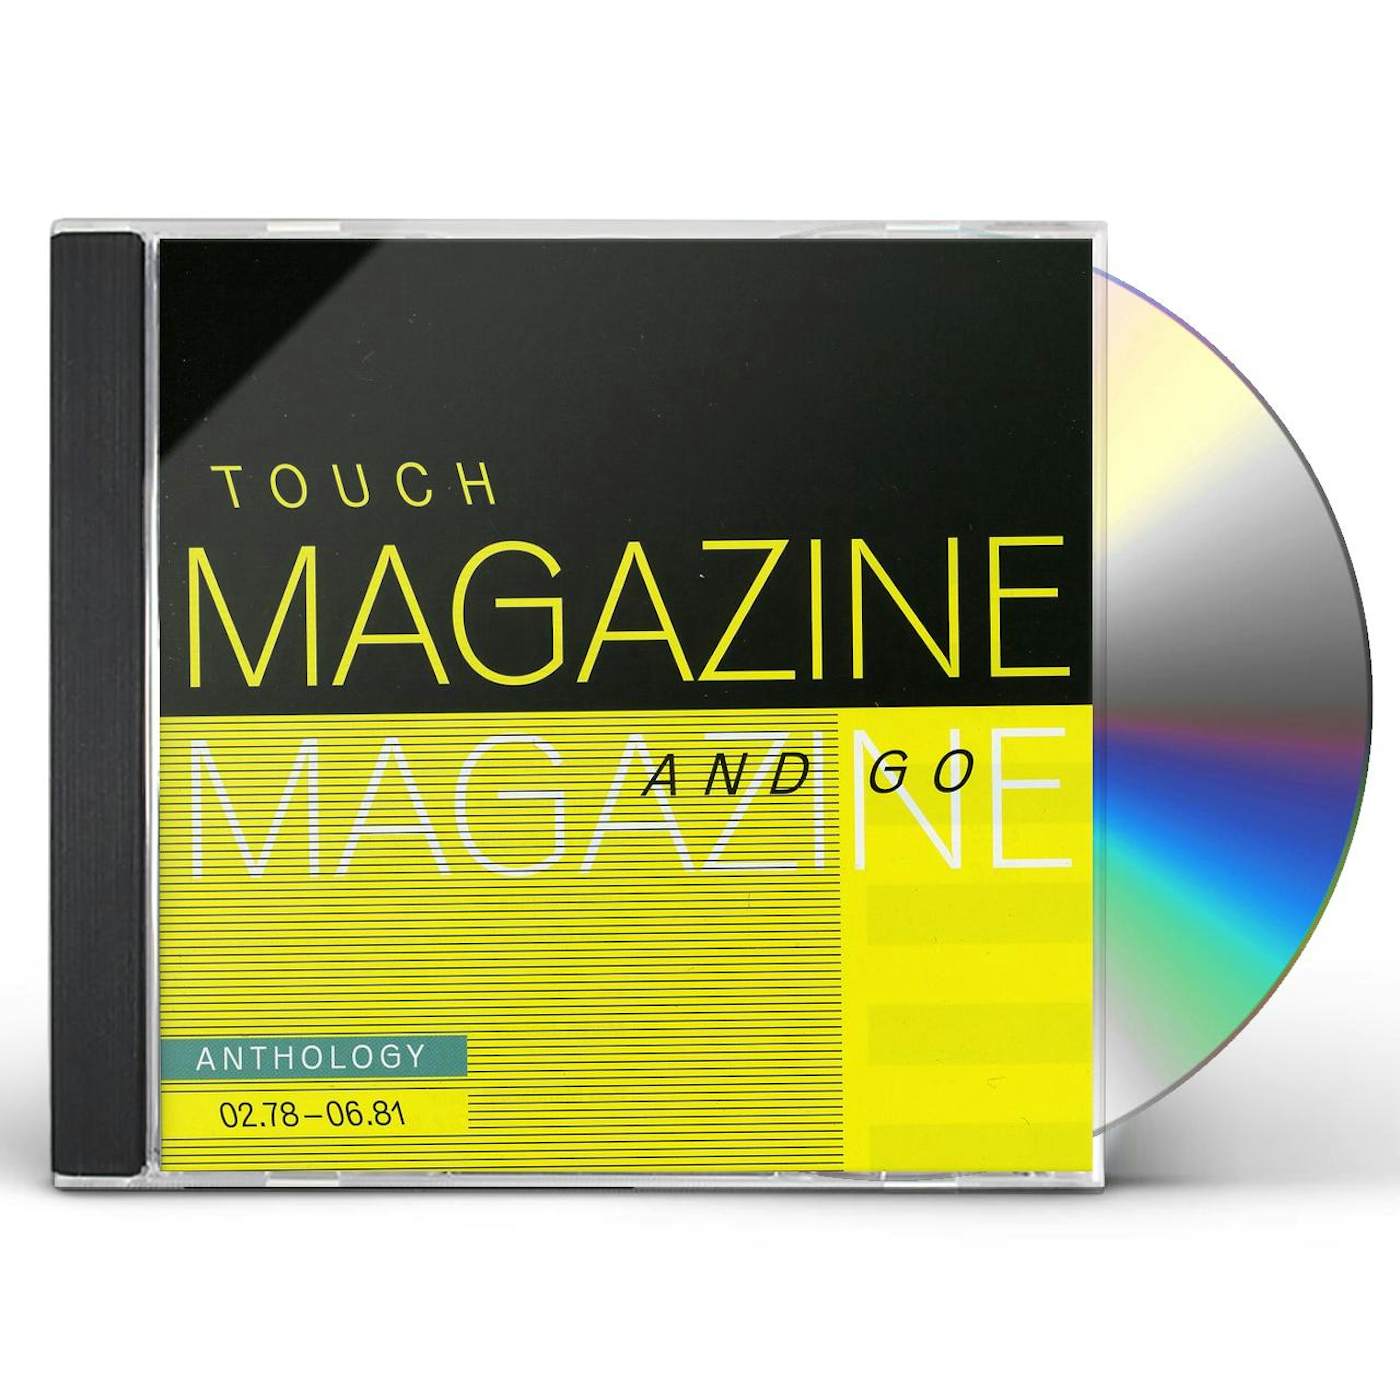 Magazine TOUCH & GO: ANTHOLOGY 02.78 - 06.81 CD